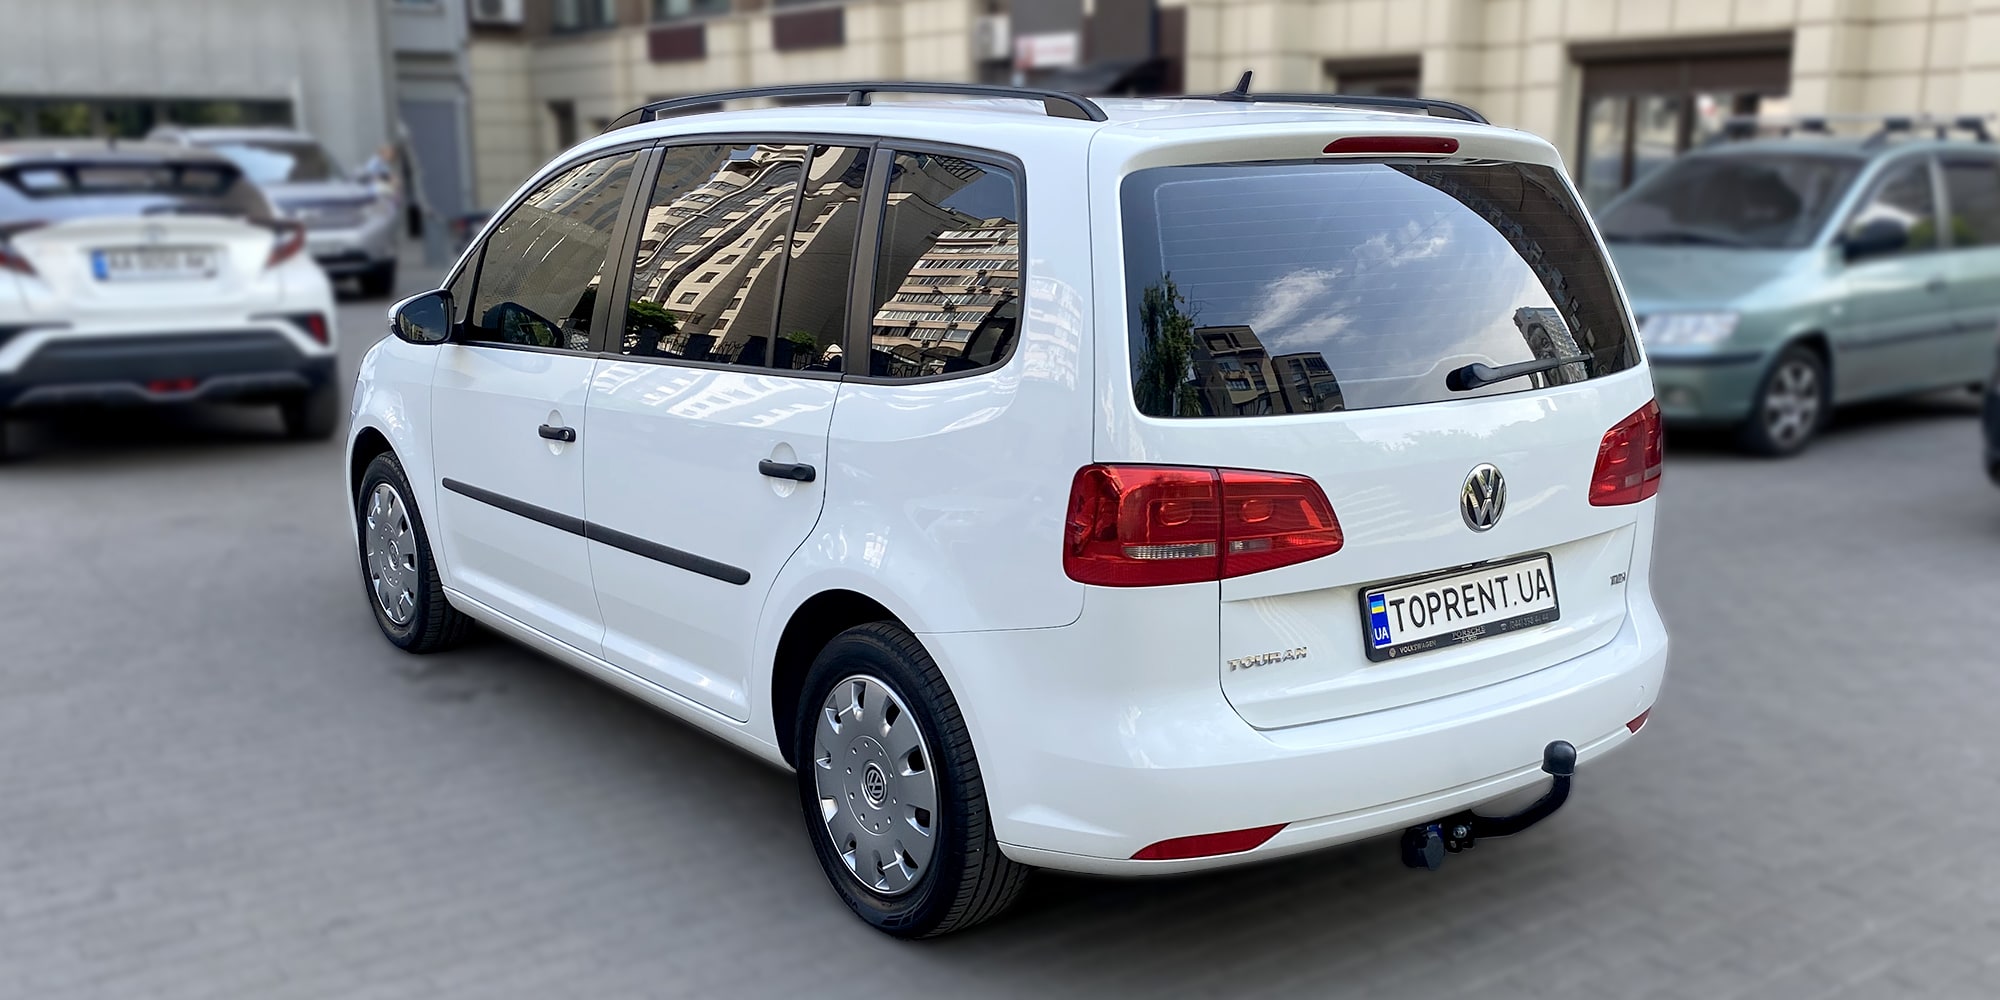 Volkswagen Touran – City Rent